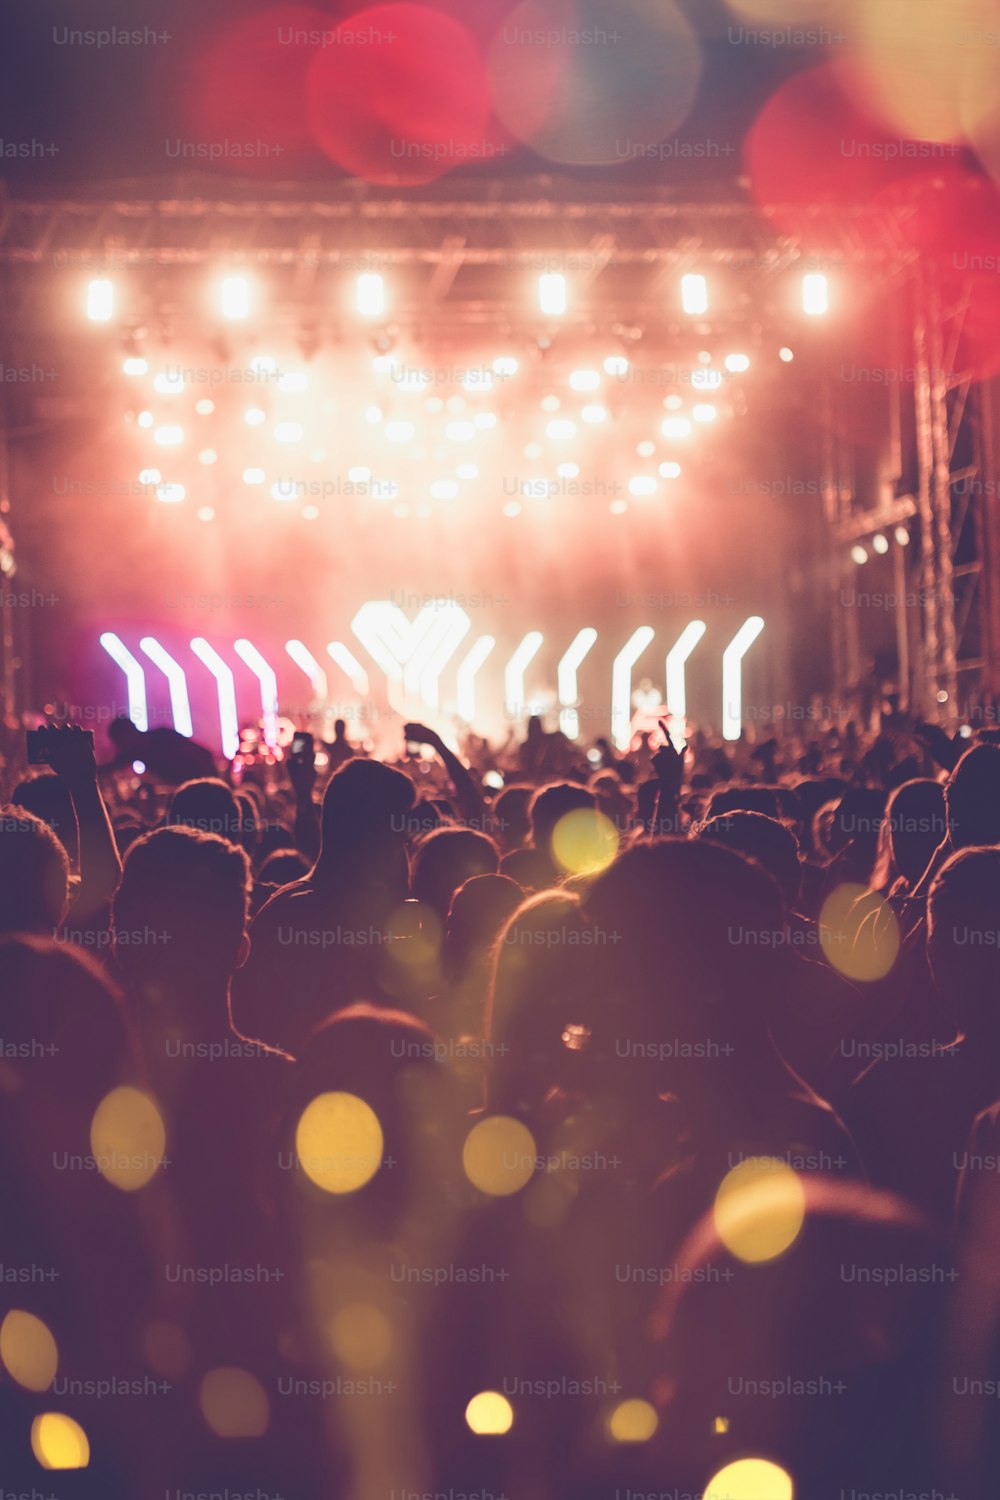 Background Music and Events. Ambiance de fête durant un Festival et Concert  de Musique. Mains agitées, la foule danse avec la musique, éclairage bleu  et violet. Stock Photo